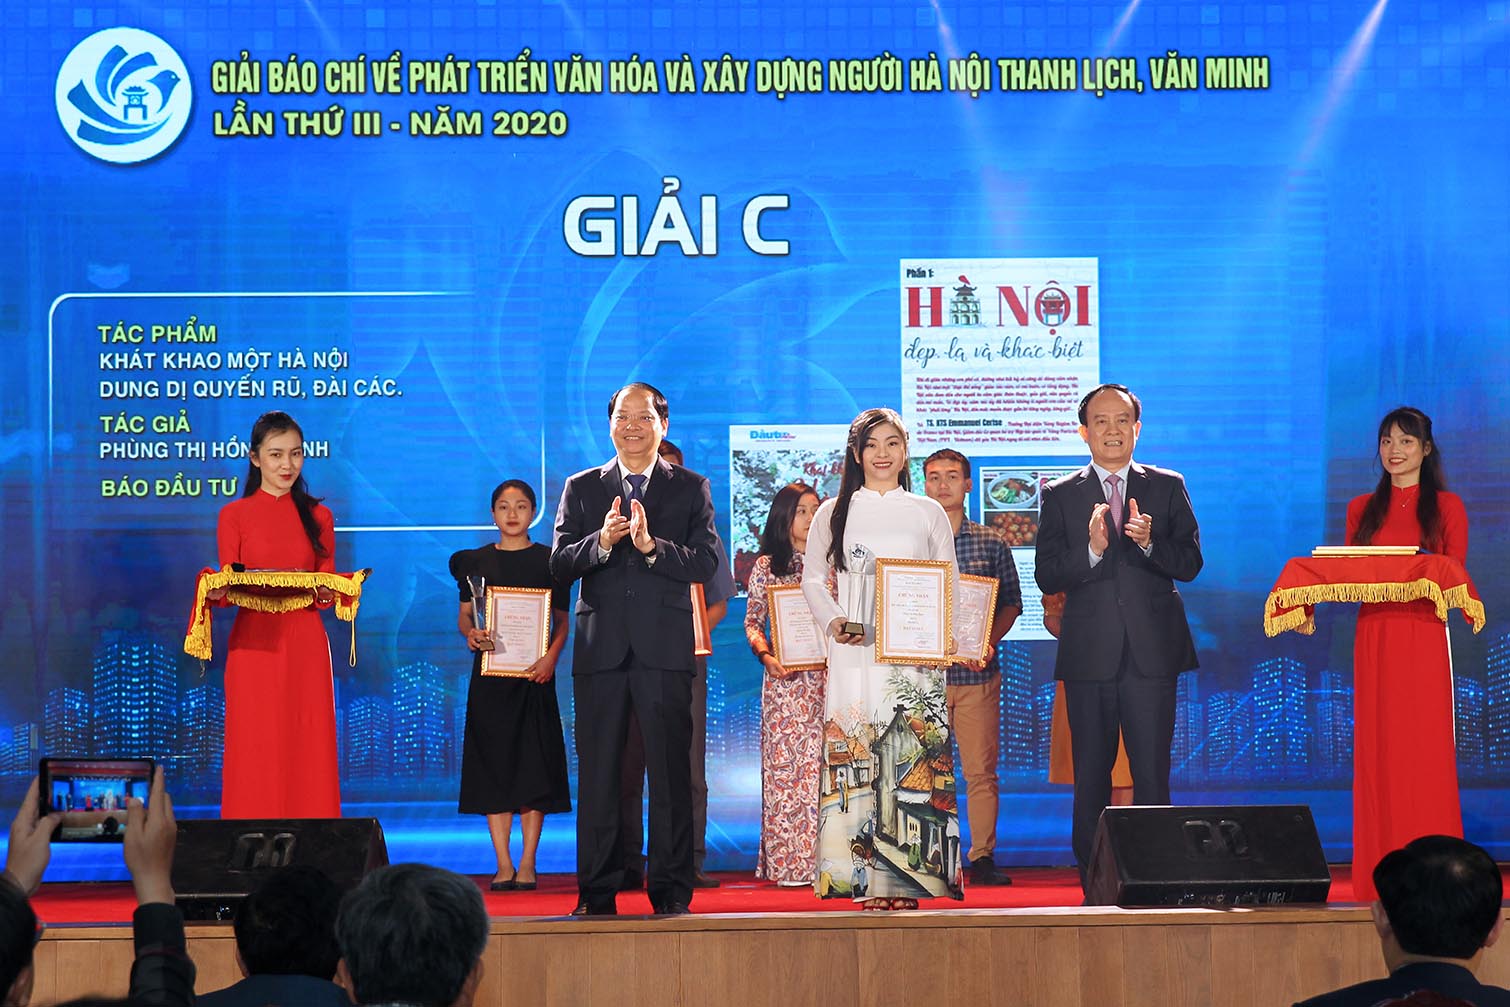 Nhà báo Phùng Thị Hồng Hạnh (Báo Đầu tư) nhận Giải C Giải Báo chí về Phát triển văn hóa và xây dựng người Hà Nội thanh lịch, văn minh